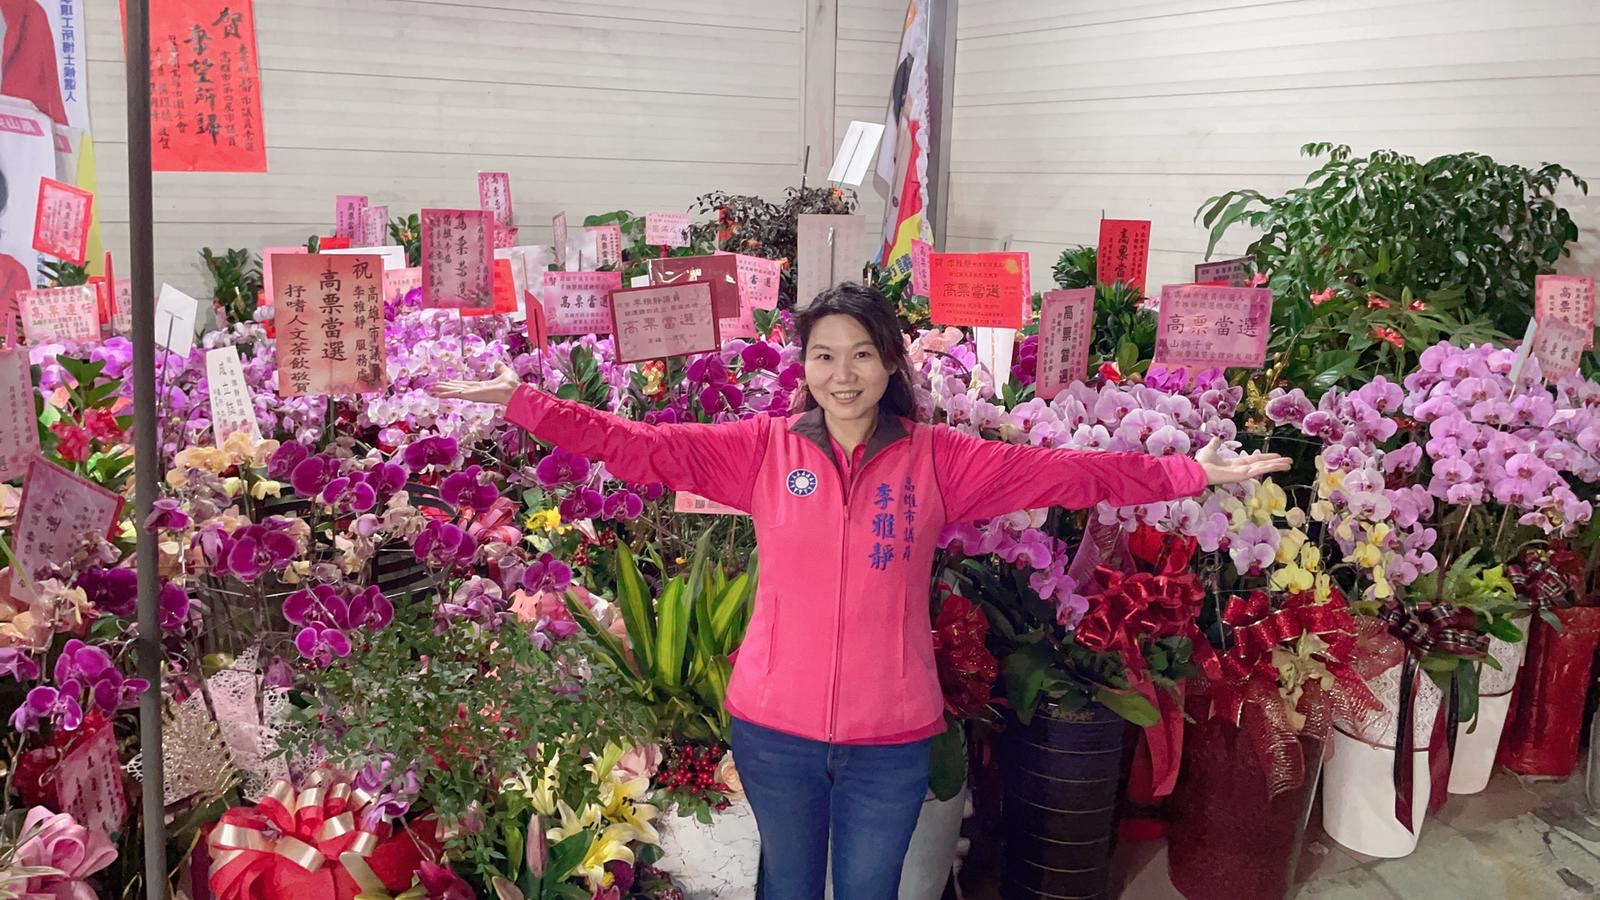 李雅靜捐贈祝賀蘭花盆栽給公益團體義賣